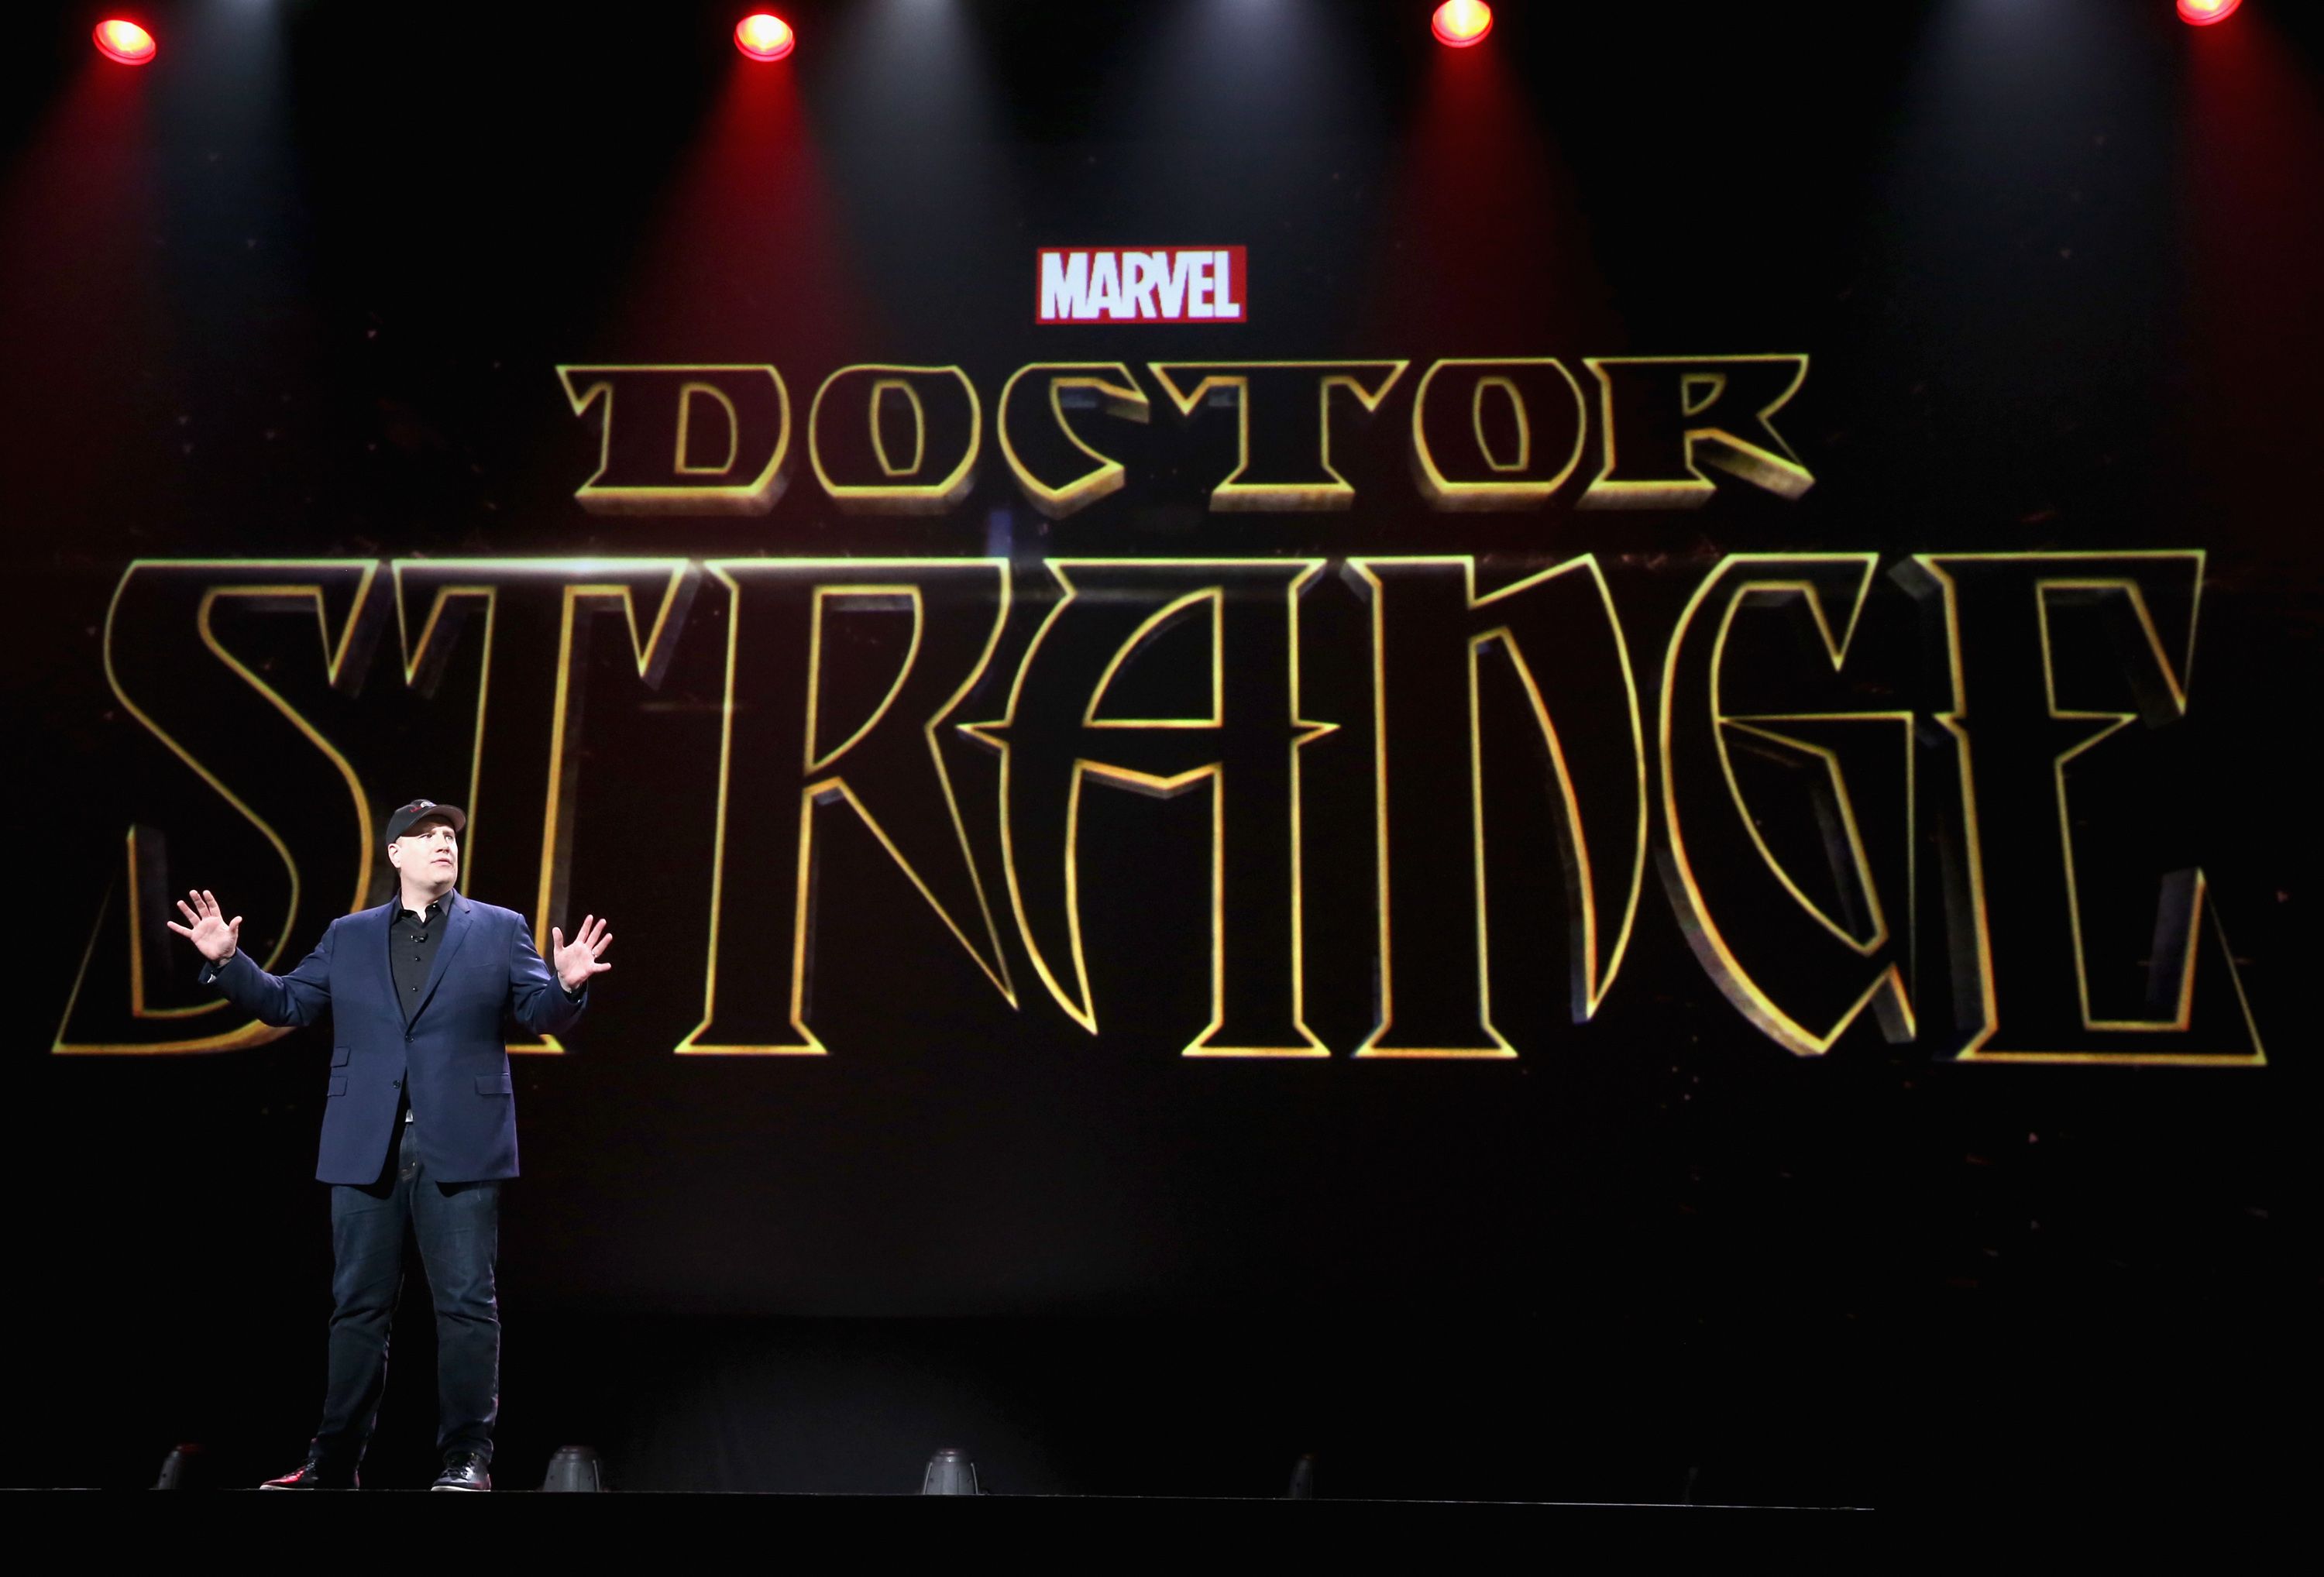 Kevin Feige Announces Marvel's Doctor Strange Movie